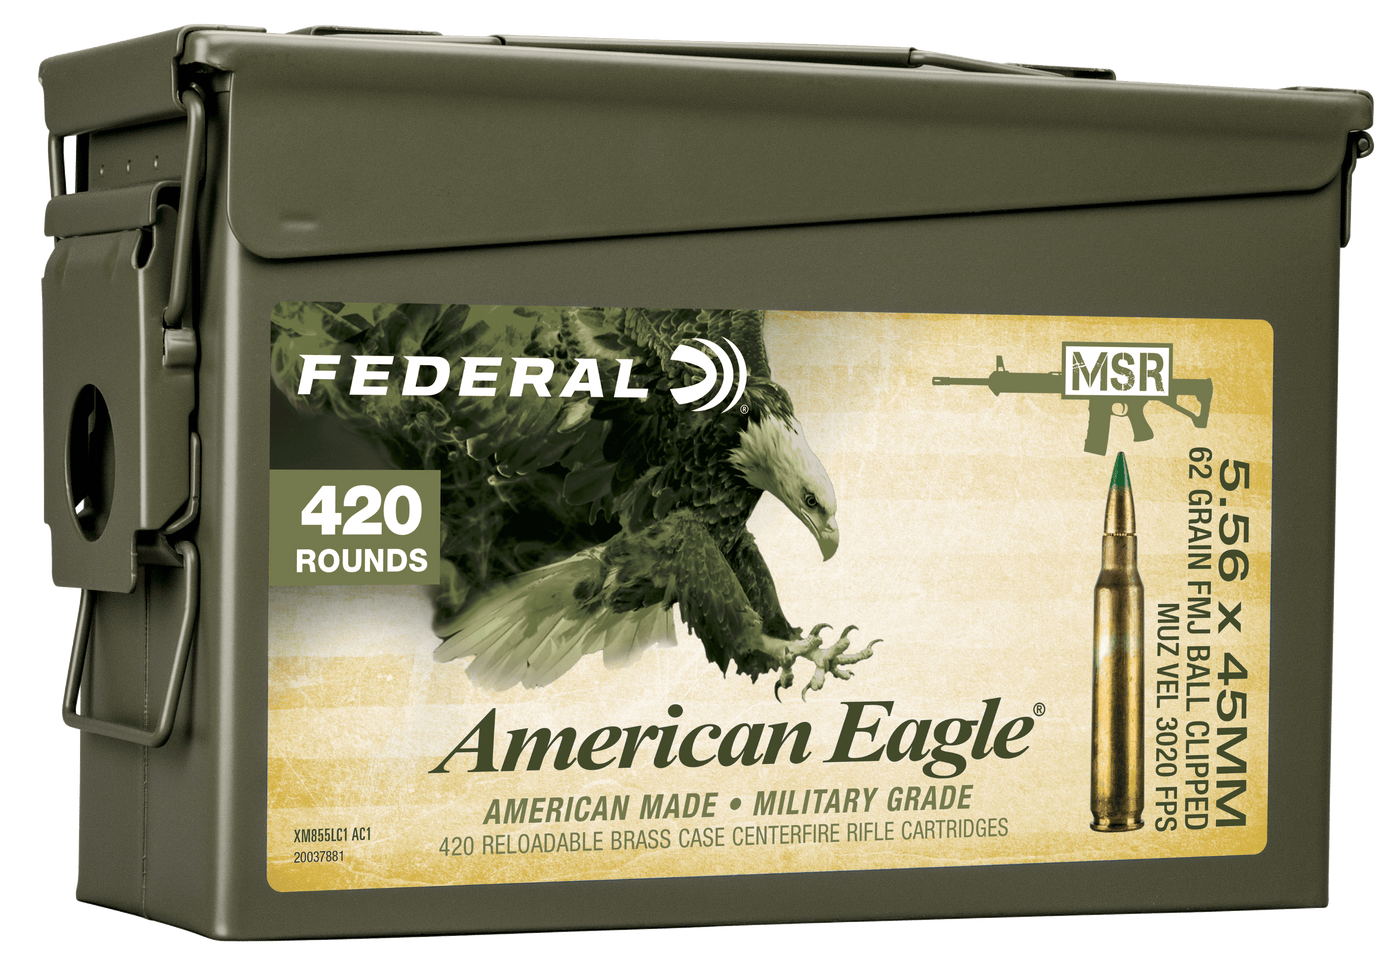 Federal Federal Xm, Fed Xm855lc1ac1  5.56 Can 30r Clip        420rd Ammo